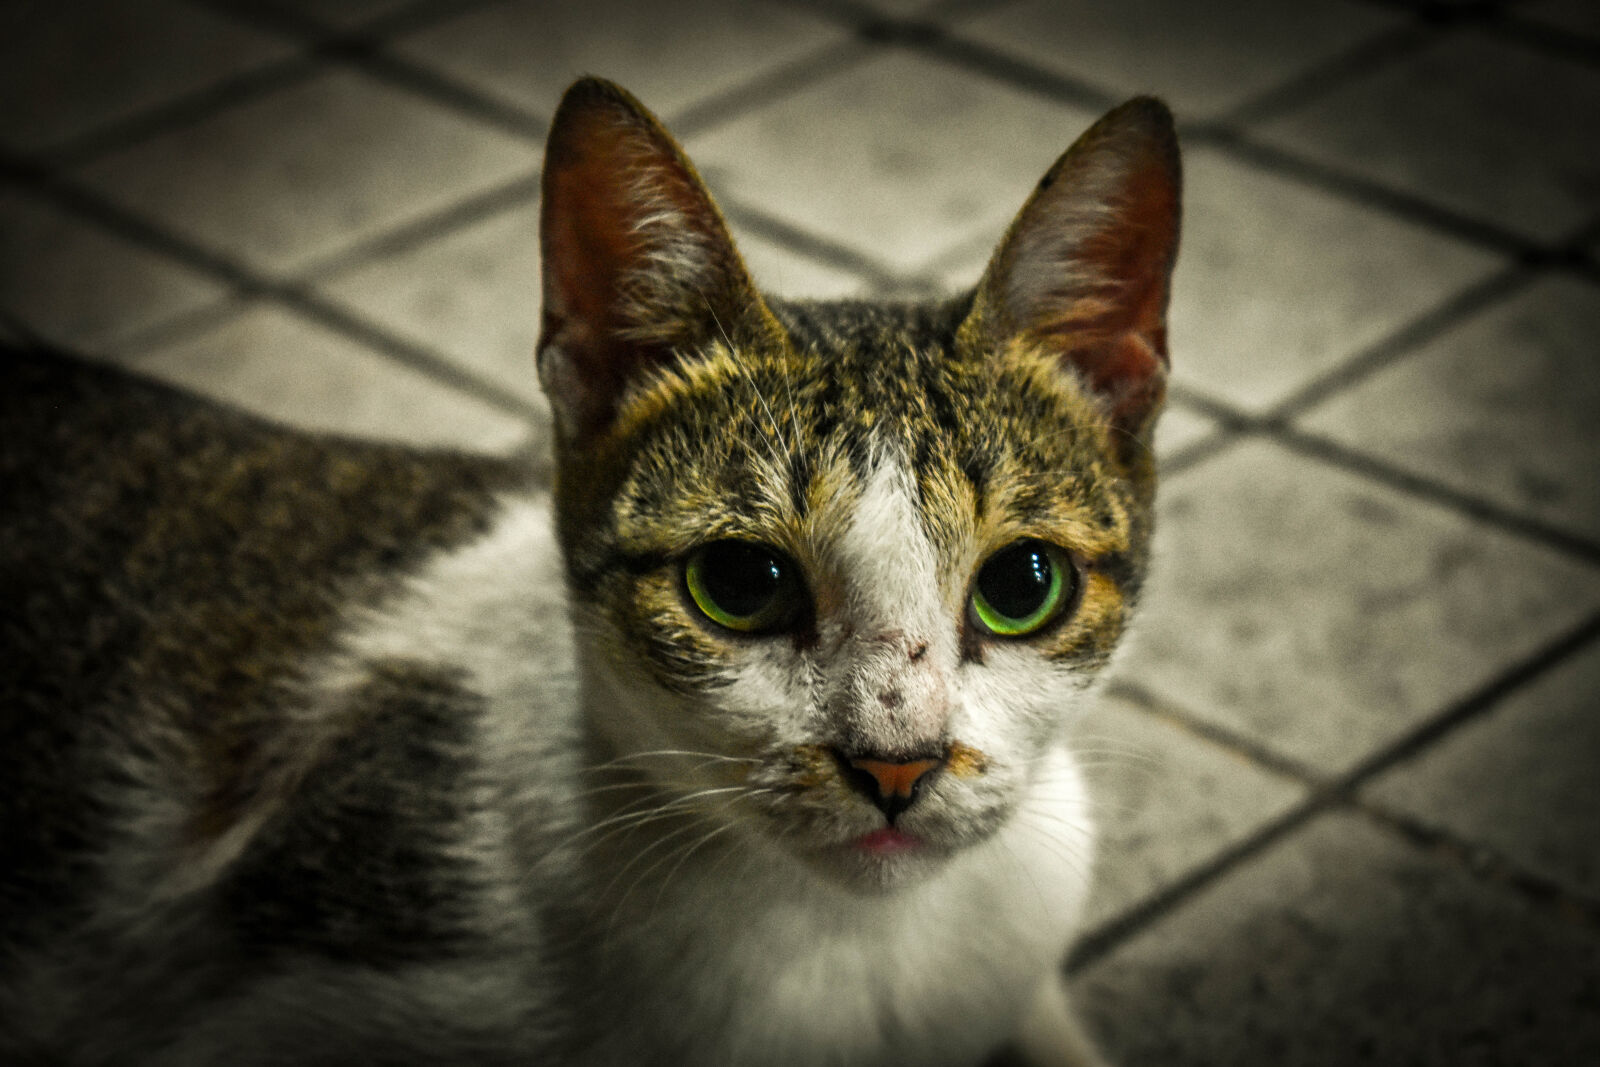 Nikon D3400 sample photo. Cat, cat, face, cat photography